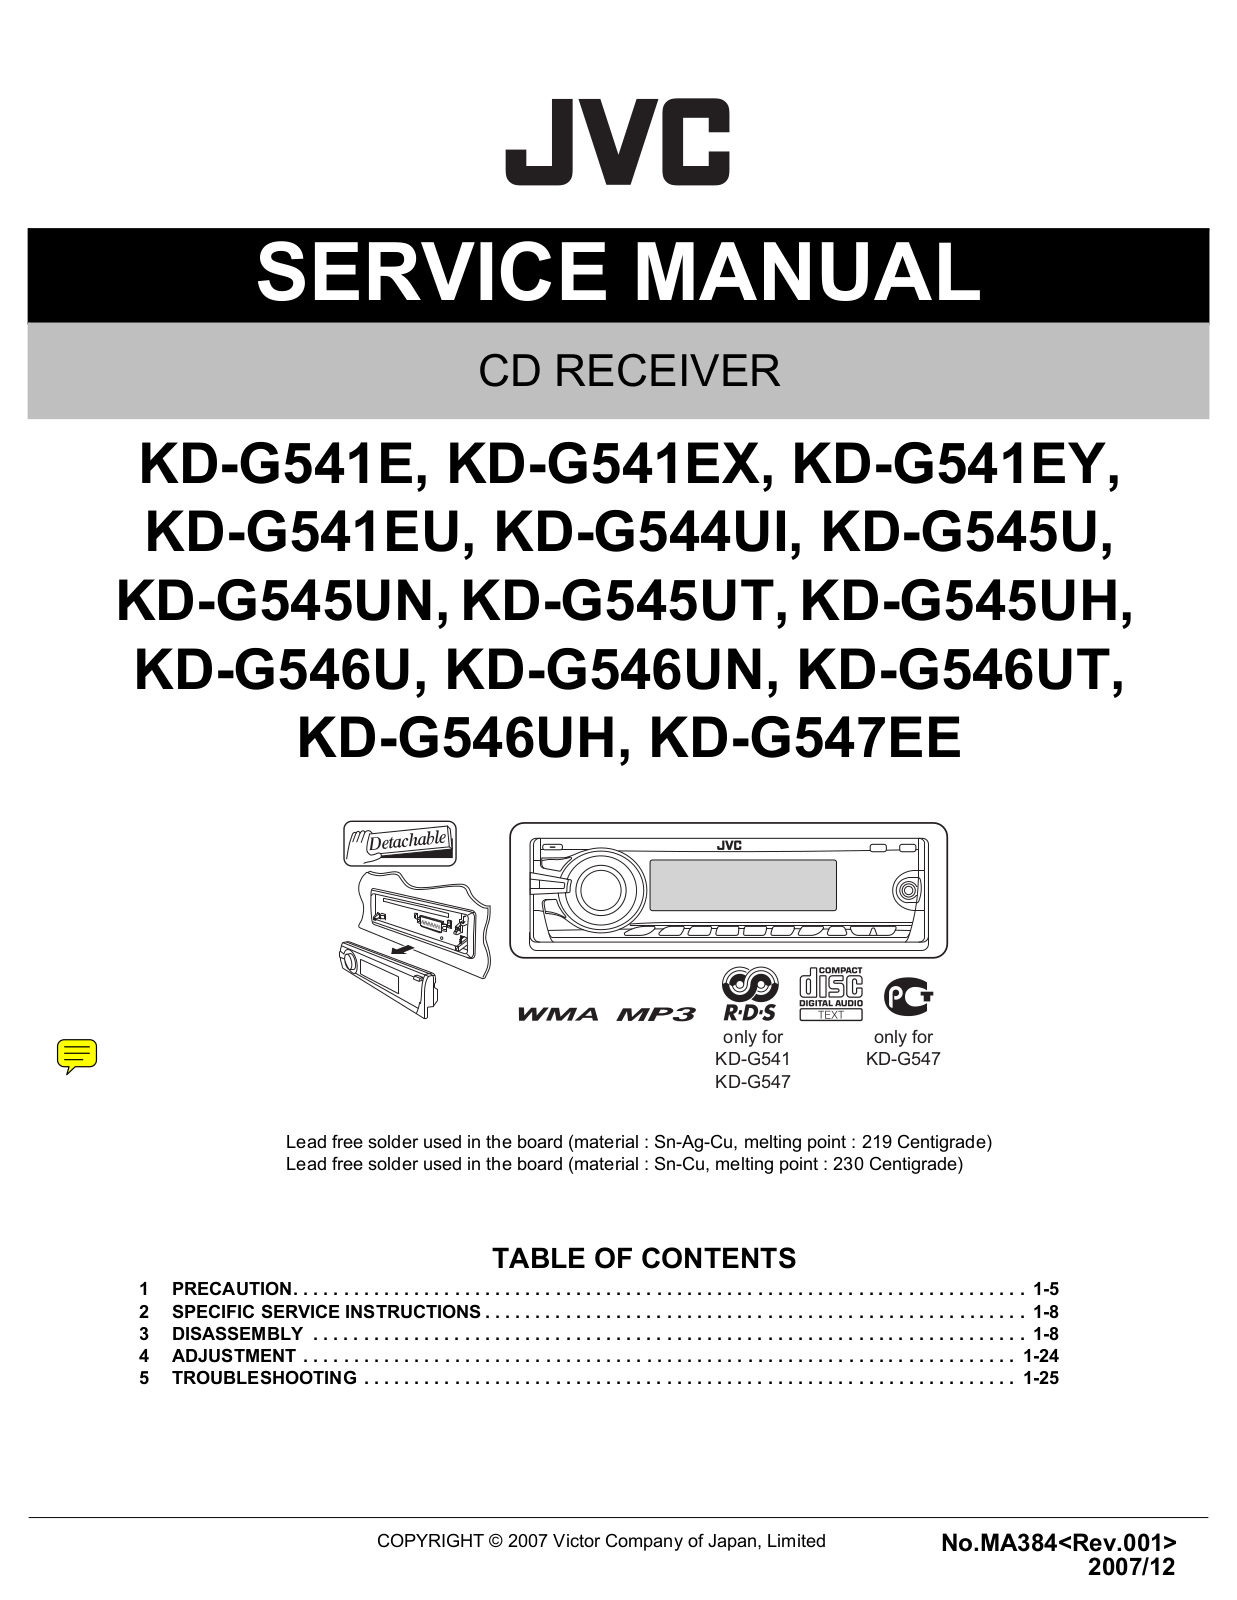 Jvc KD-G547-EE, KD-G545, KD-G544-UI, KD-G541, KD-G546 Service Manual